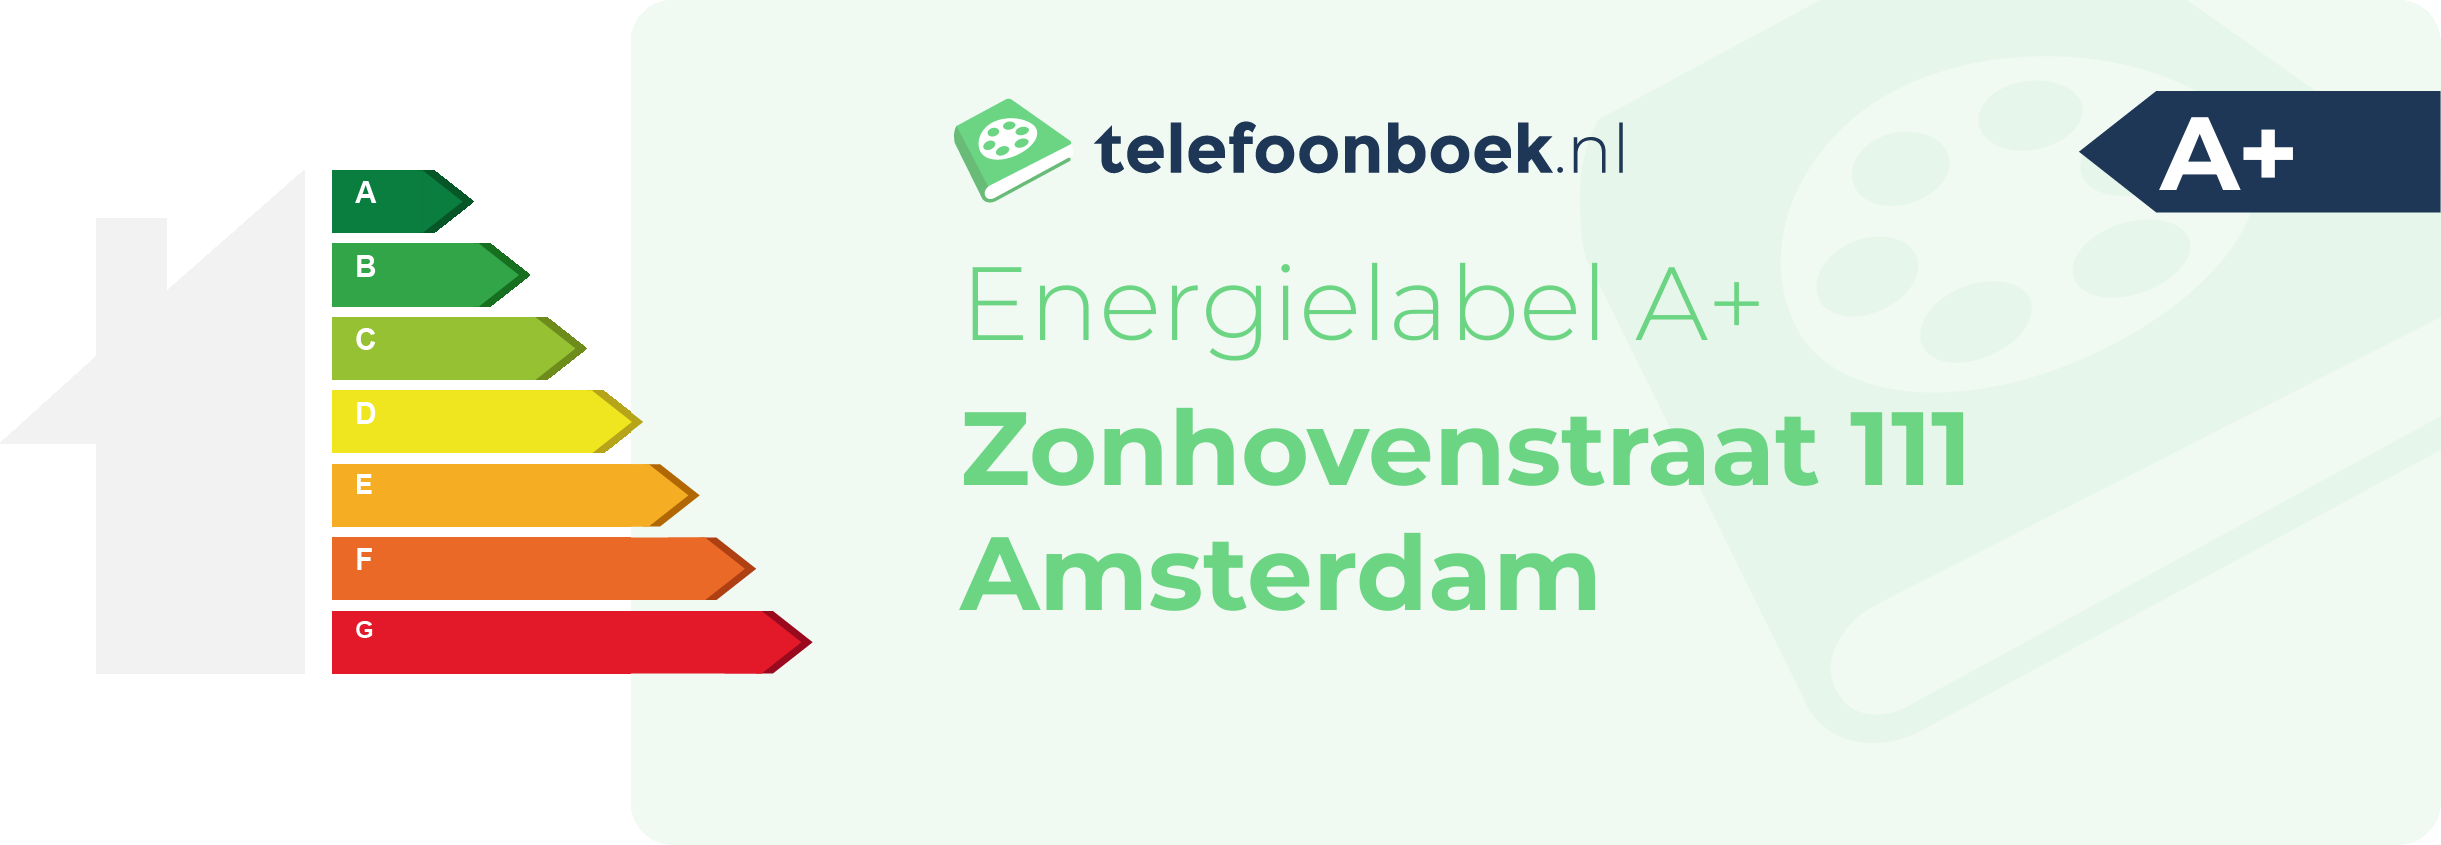 Energielabel Zonhovenstraat 111 Amsterdam